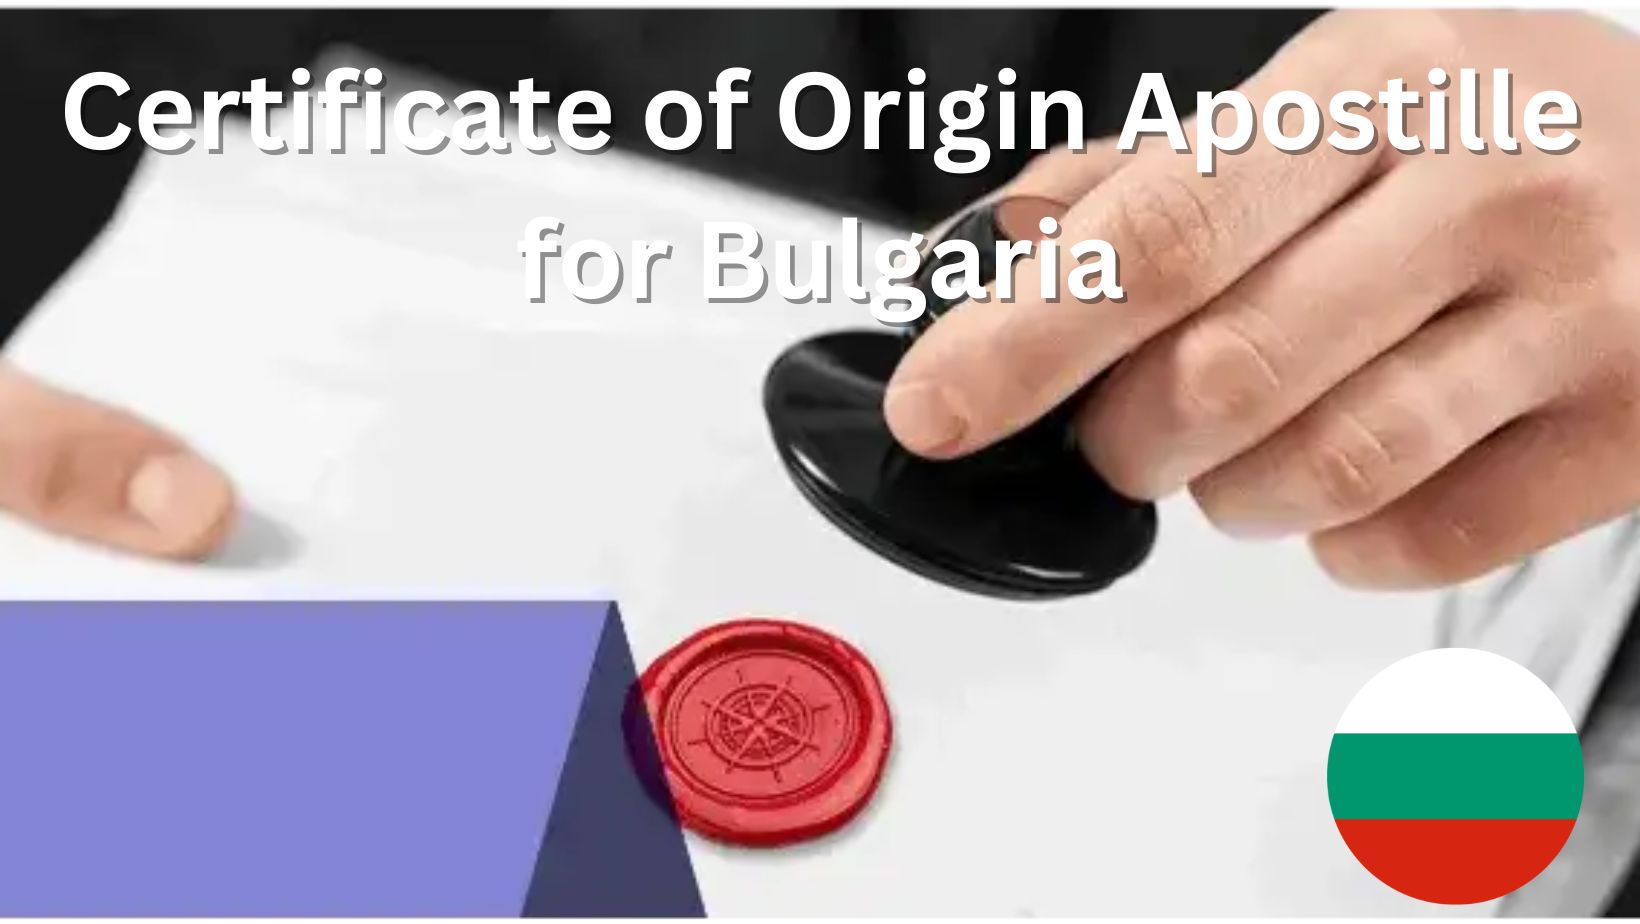 Certificate of Origin Apostille for Bulgaria